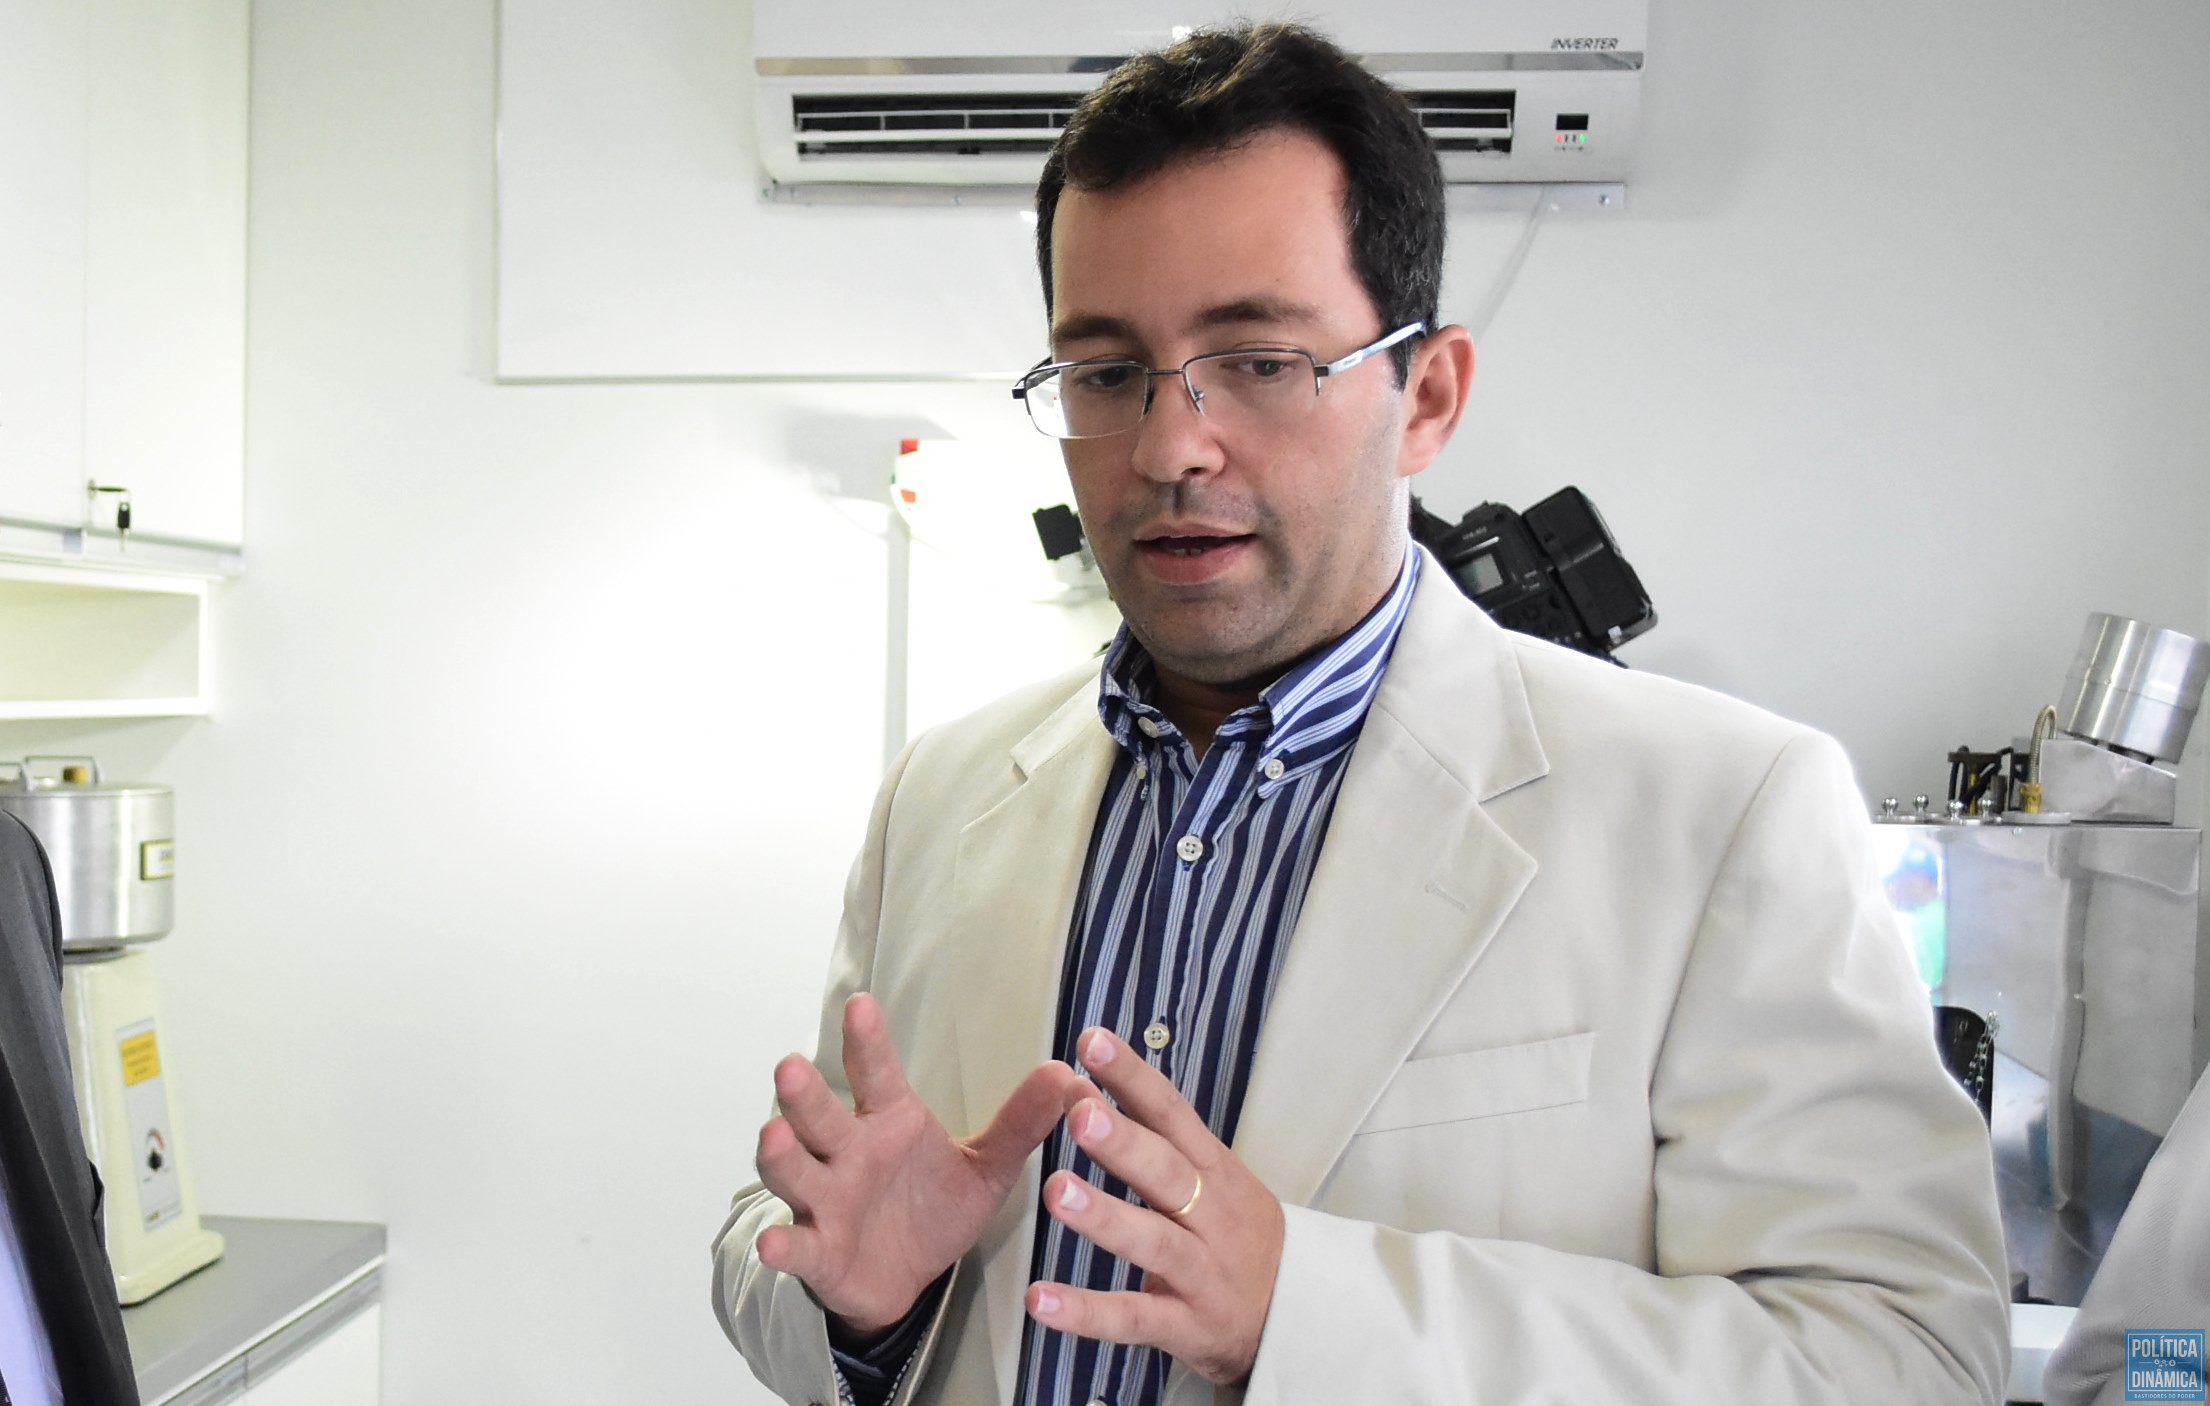 Diretor explica nova tecnologia no TCE-PI (Foto: Jailson Soares/PoliticaDinamica.com)